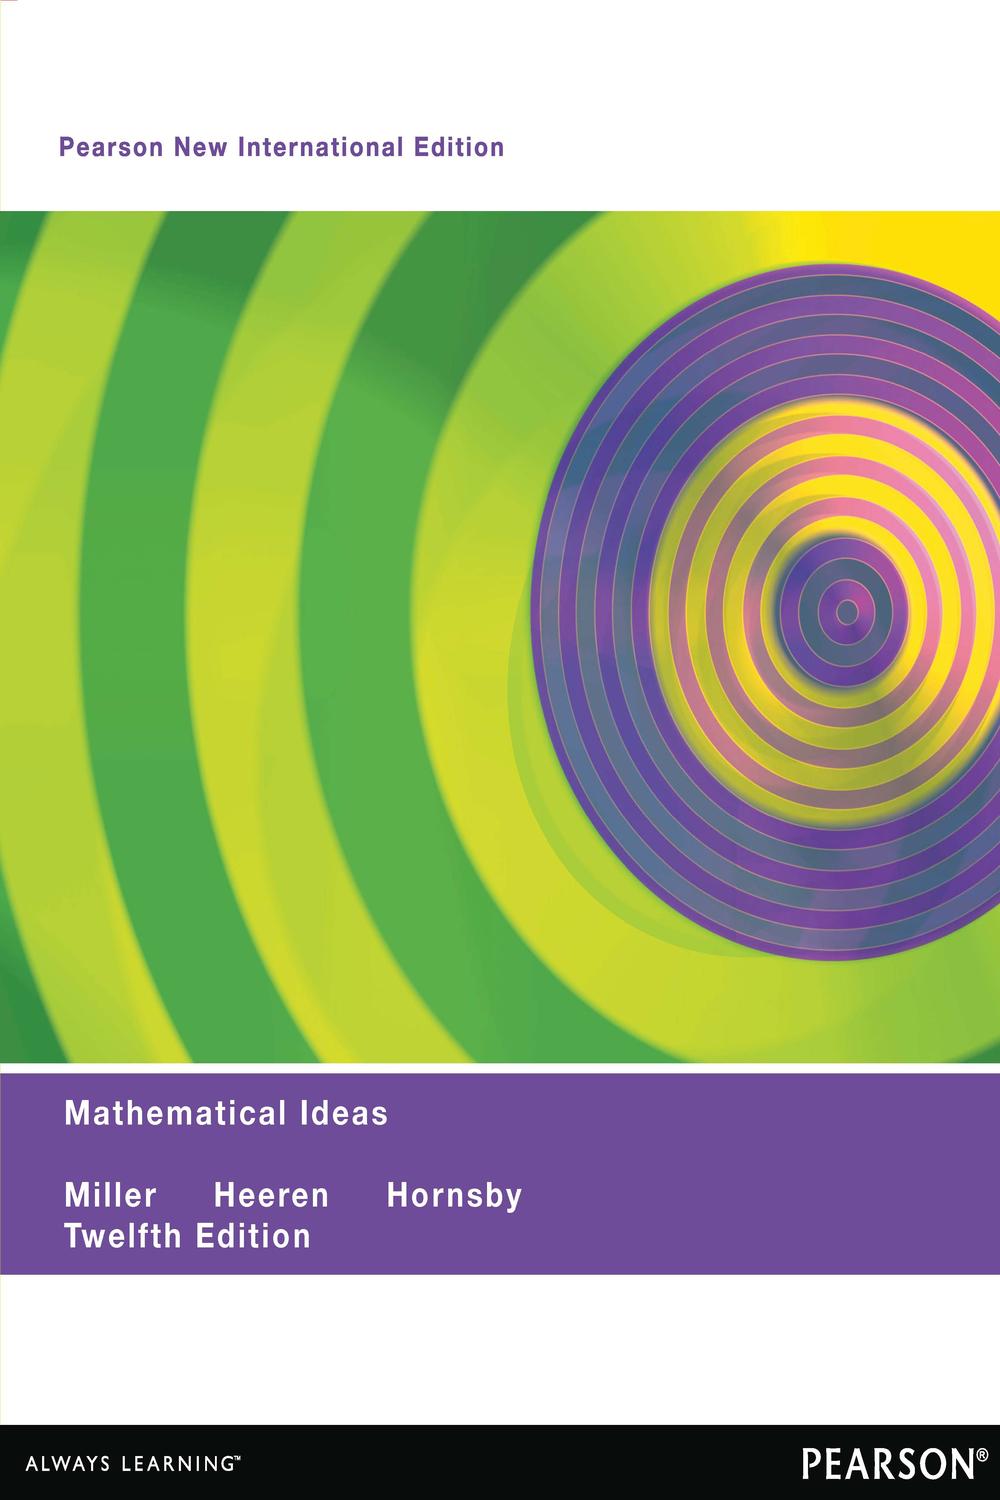 Mathematical Ideas - Charles Miller, Vern Heeren, John Hornsby